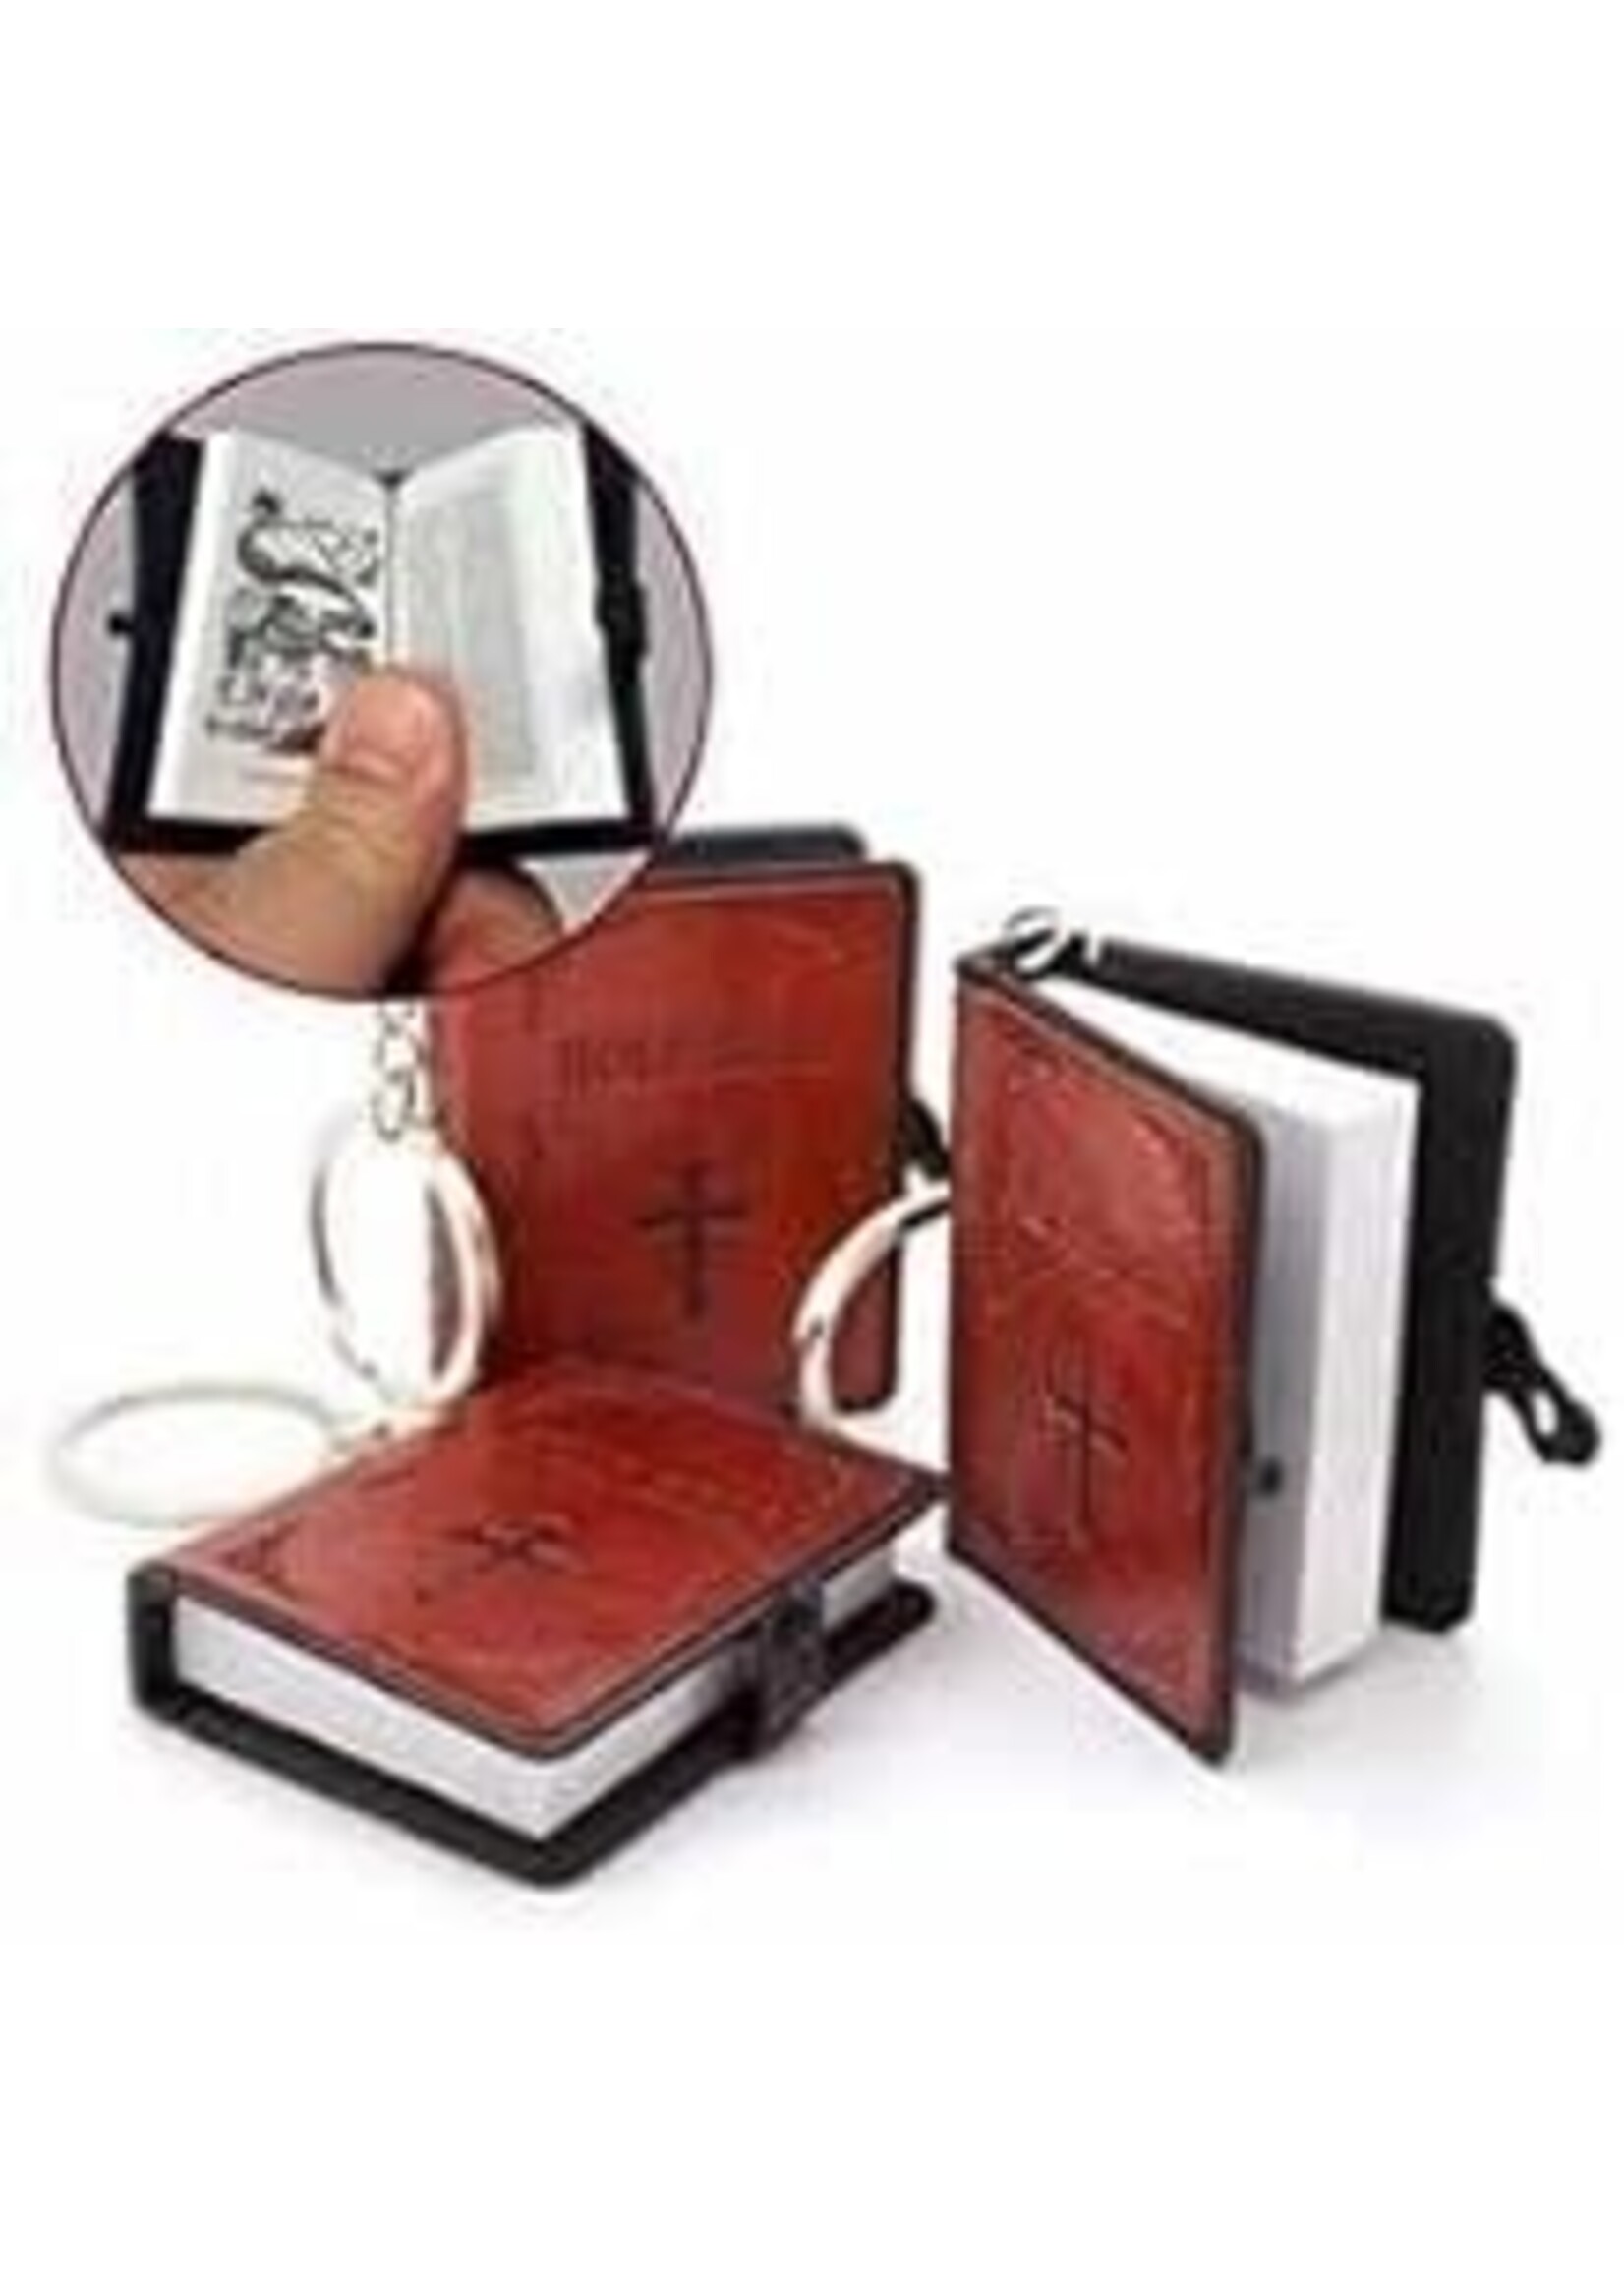 Keychain-Smallest Bible XL-Brown